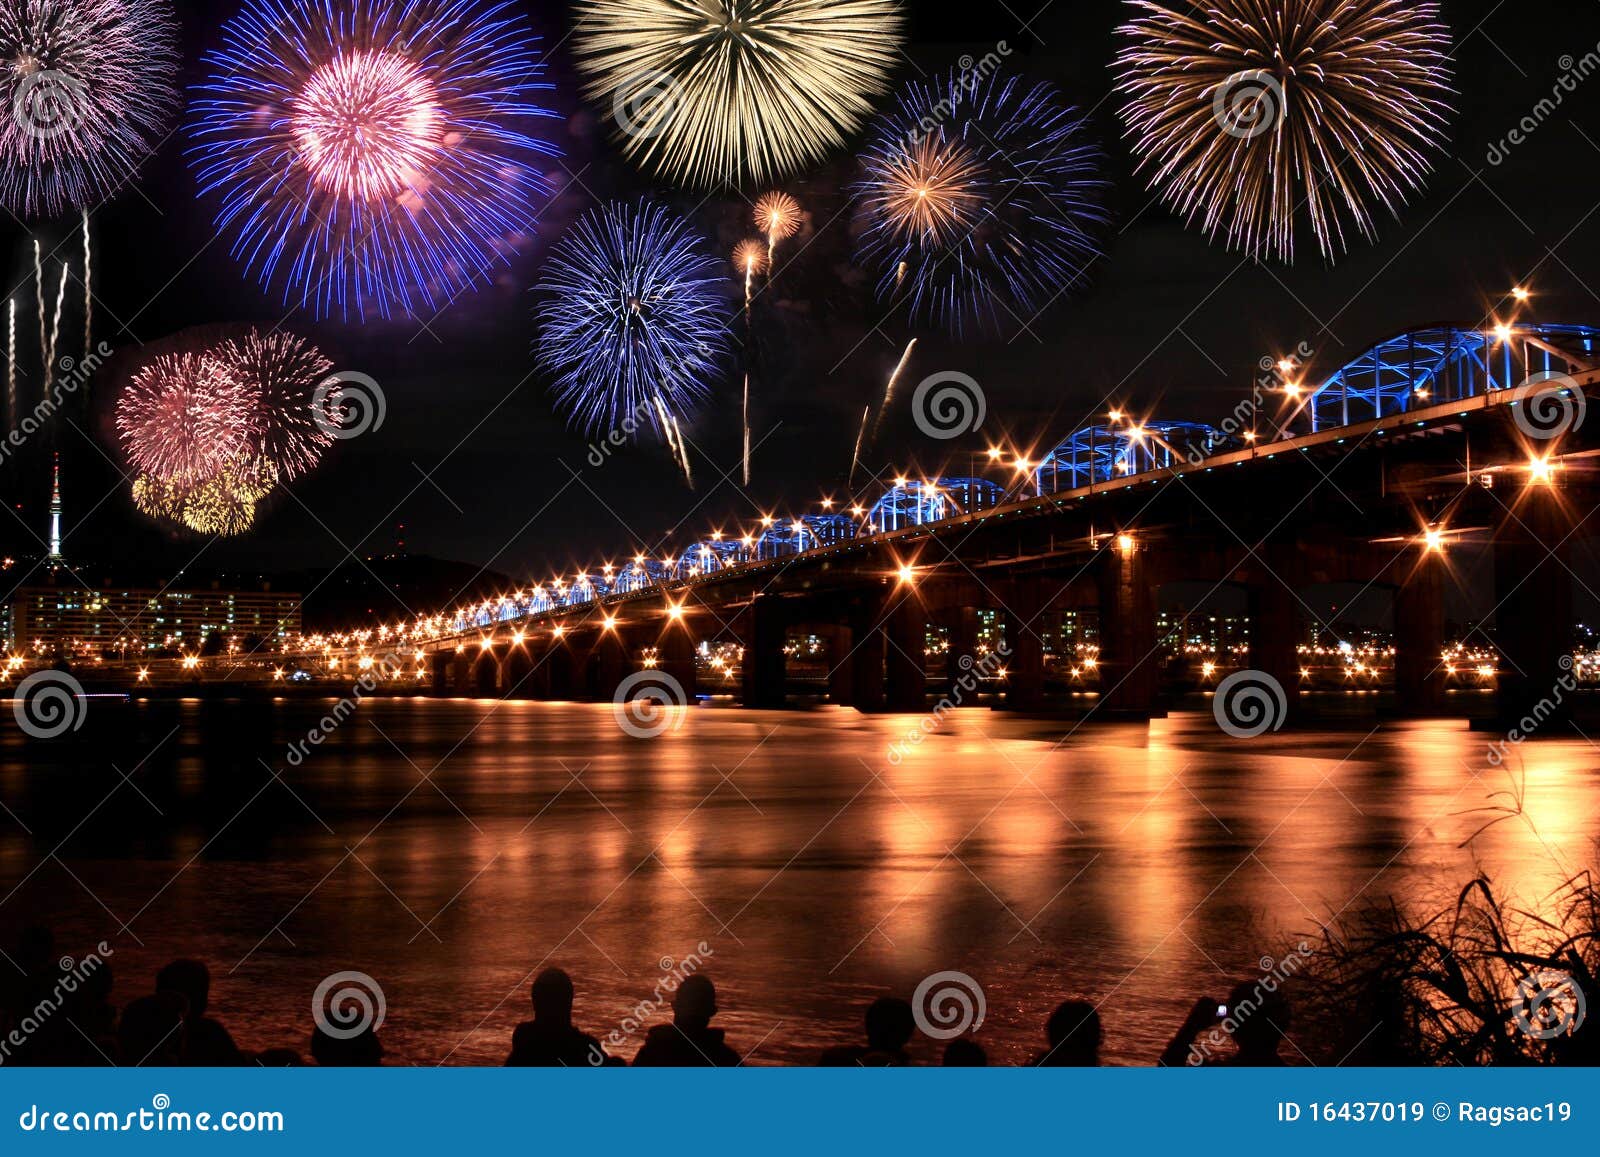 spectacular fireworks festival at han river